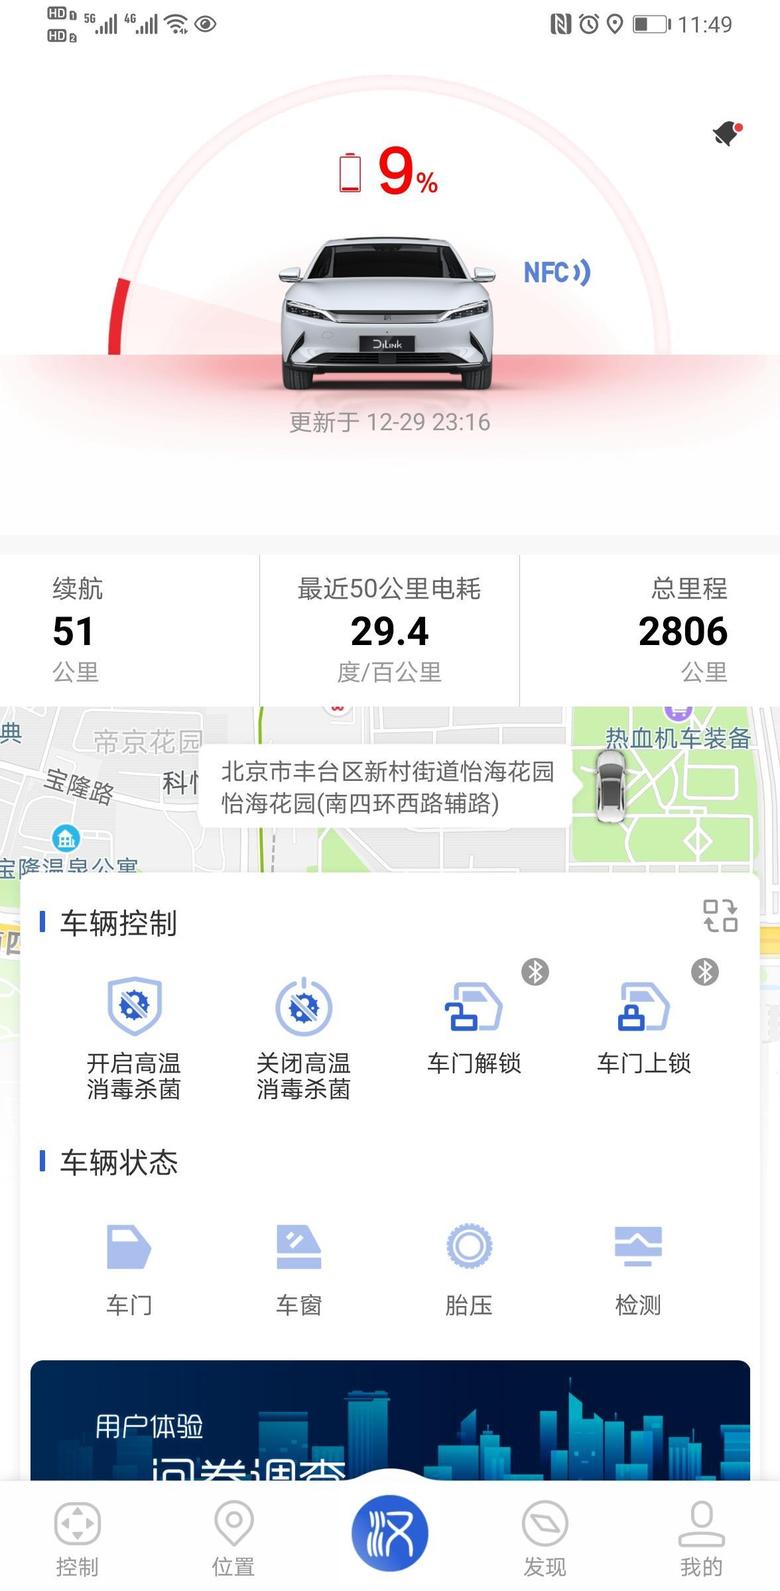 汉ev 坐标北京，室外温度零下十度，全程空调25度，载3人，经济模式，标准回馈，从满电到9%，跑了209公里，